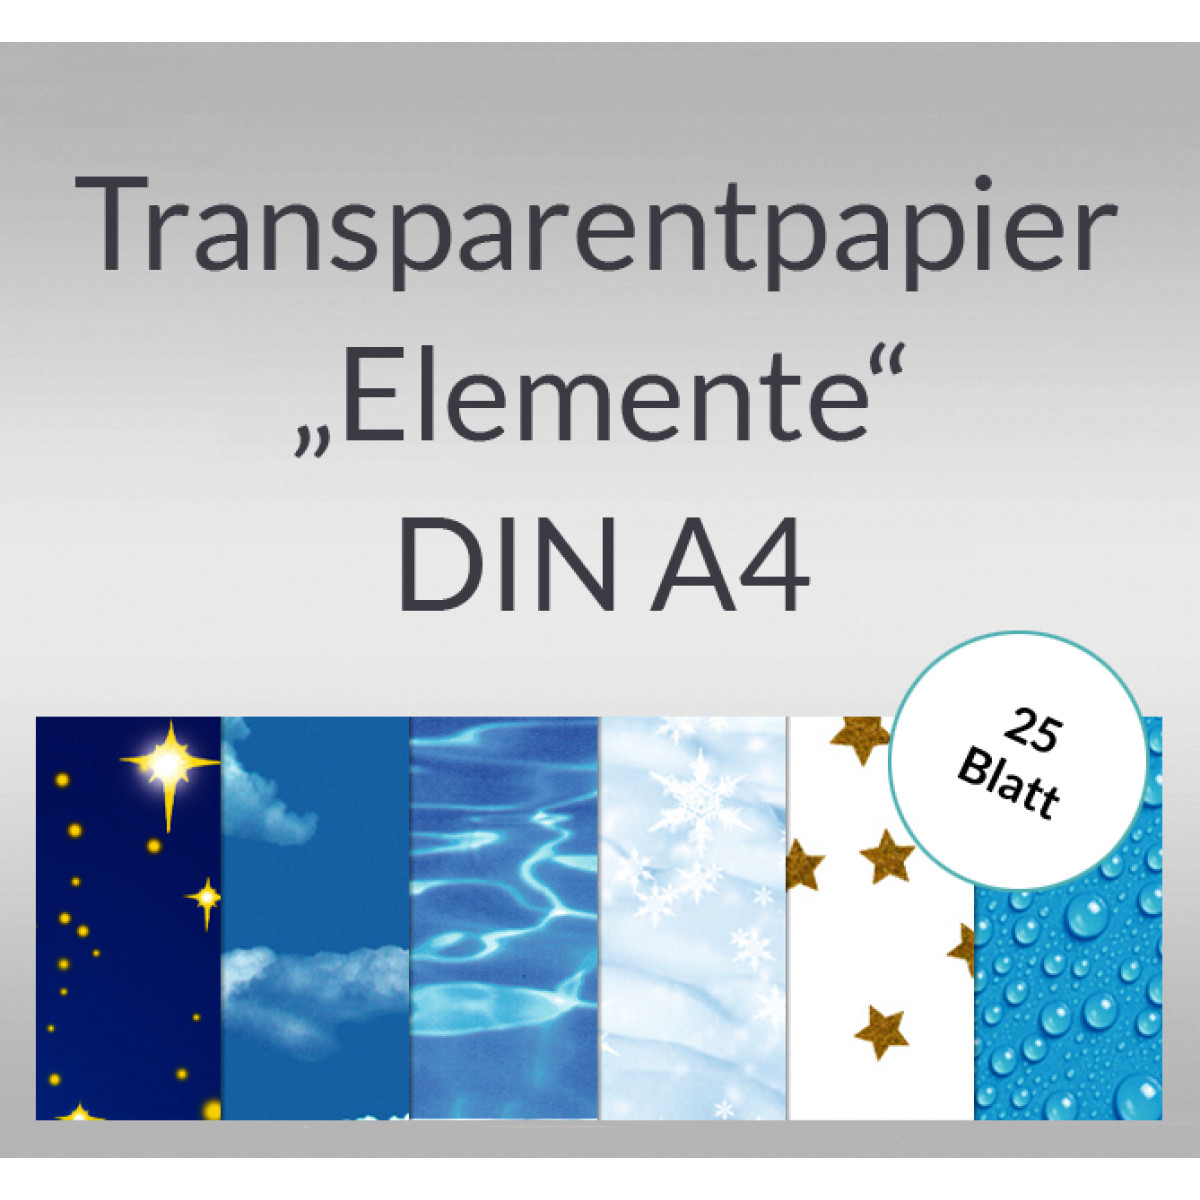 Transparentpapier "Elemente" DIN A4 - 25 Blatt